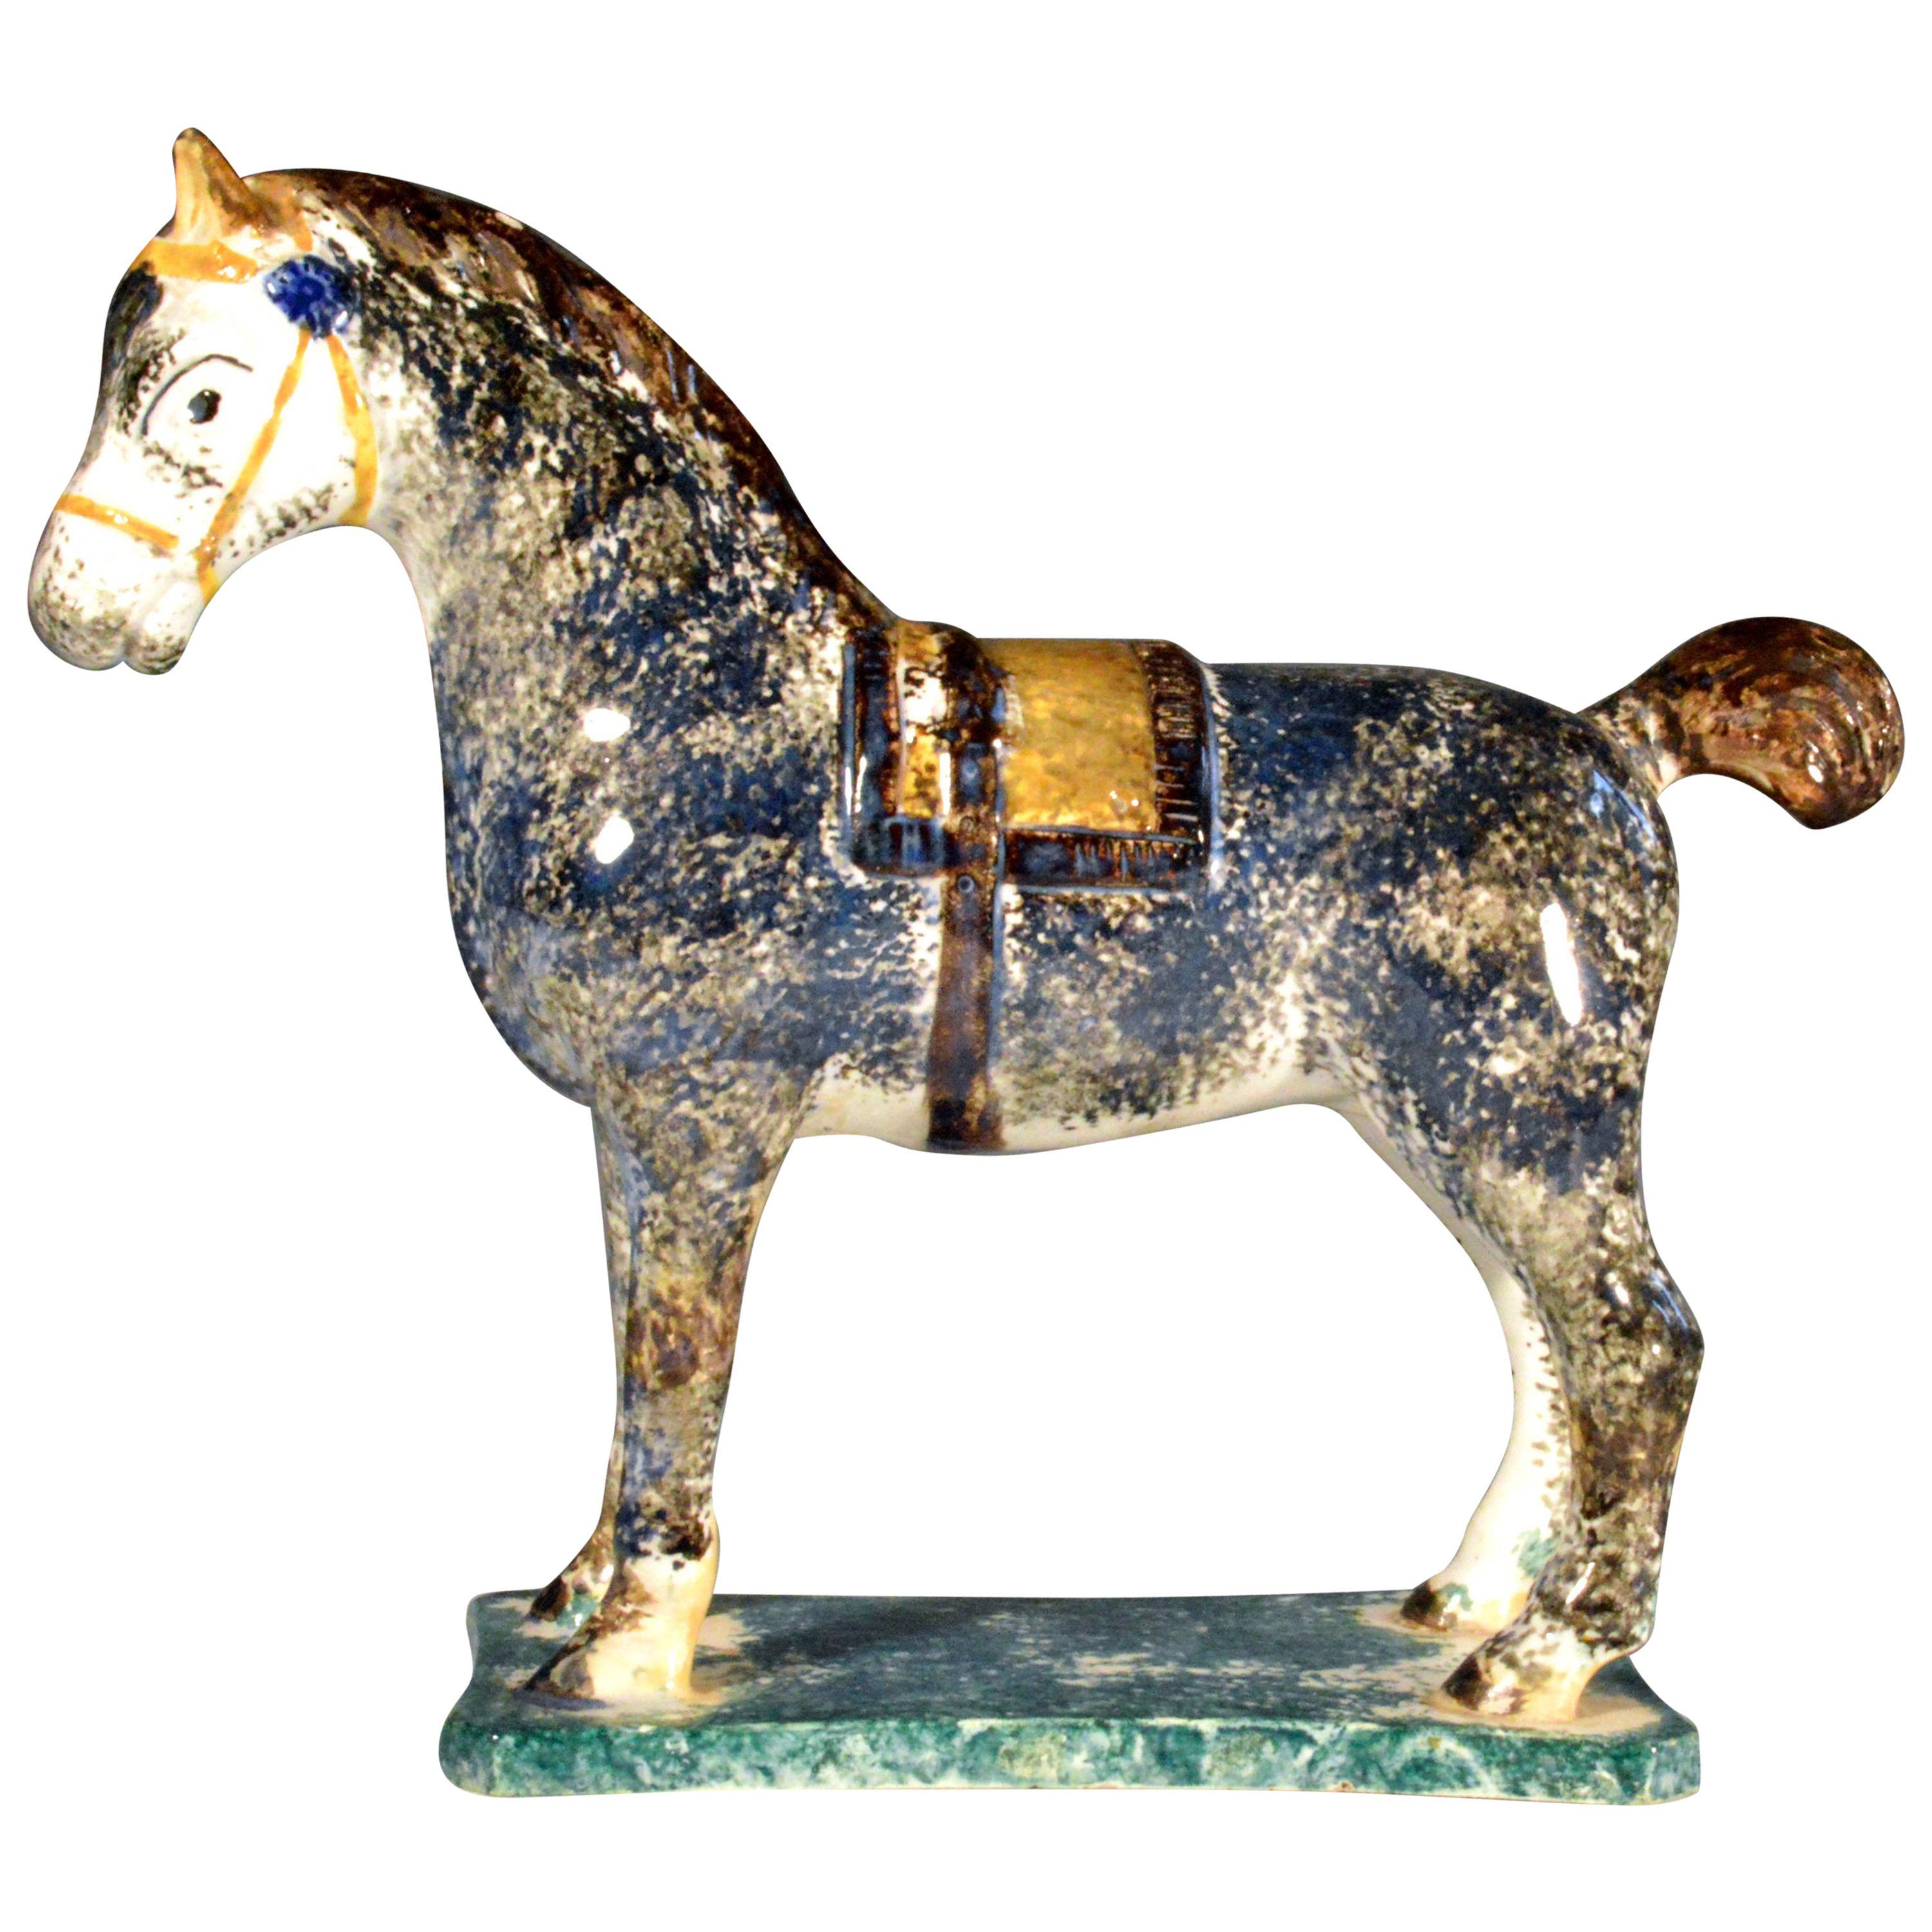 Modèle de cheval en poterie Prattware de Newcastle, poterie St. Anthony, Newcastle